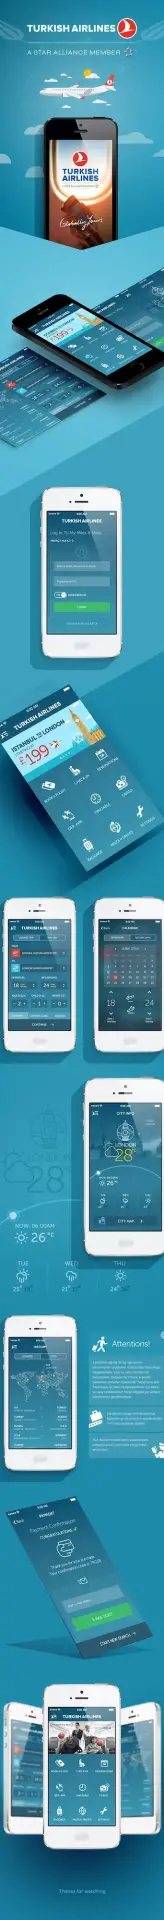 Turkish Airlines App Redesign Concept par Murat Gürsoy